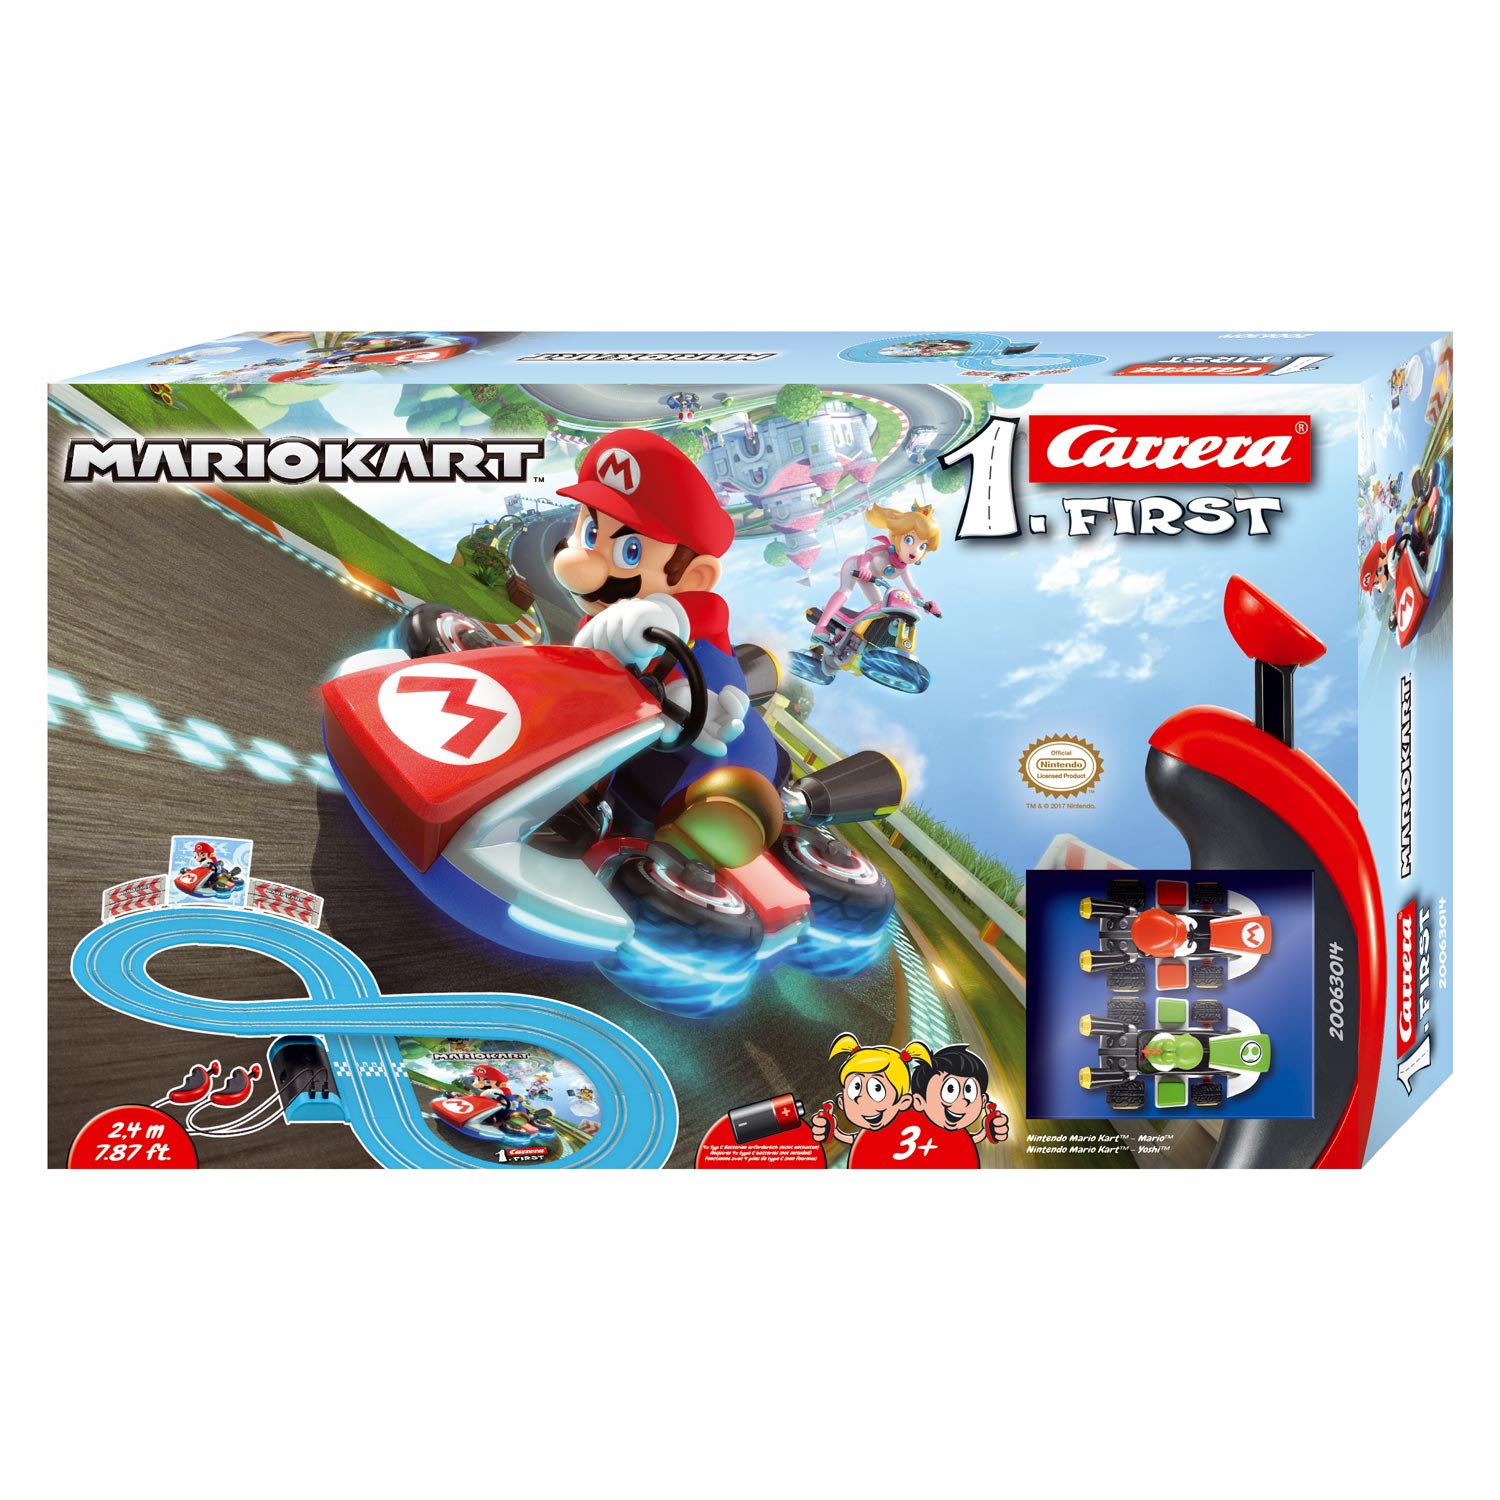 Carrera First Racebaan Mario Kart Thimble Toys 5246